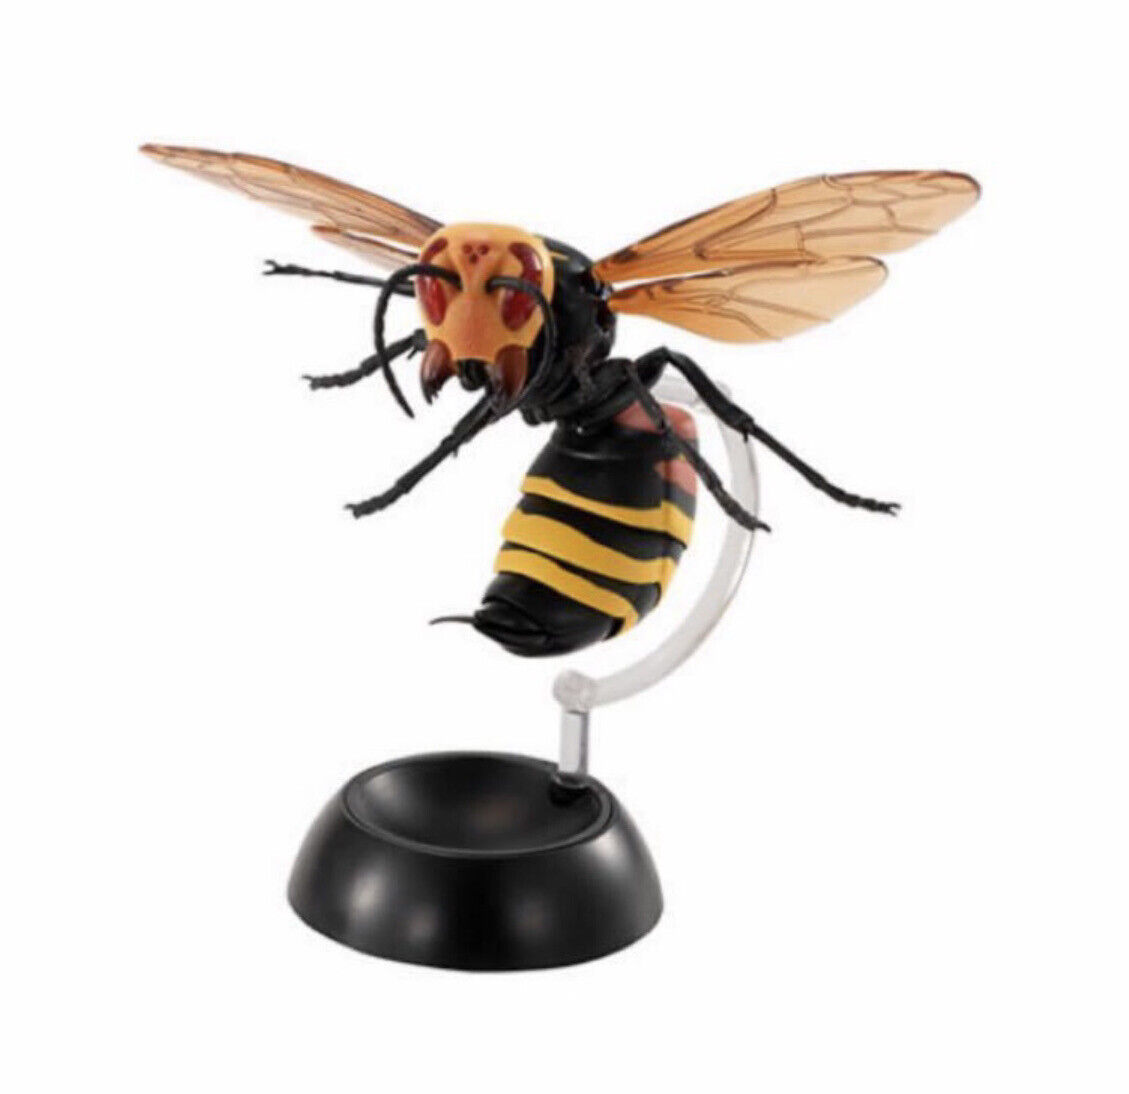 Bandai Vespa Ducalis Wasp Murder Hornet PVC Figure w/ Movable Joints Large